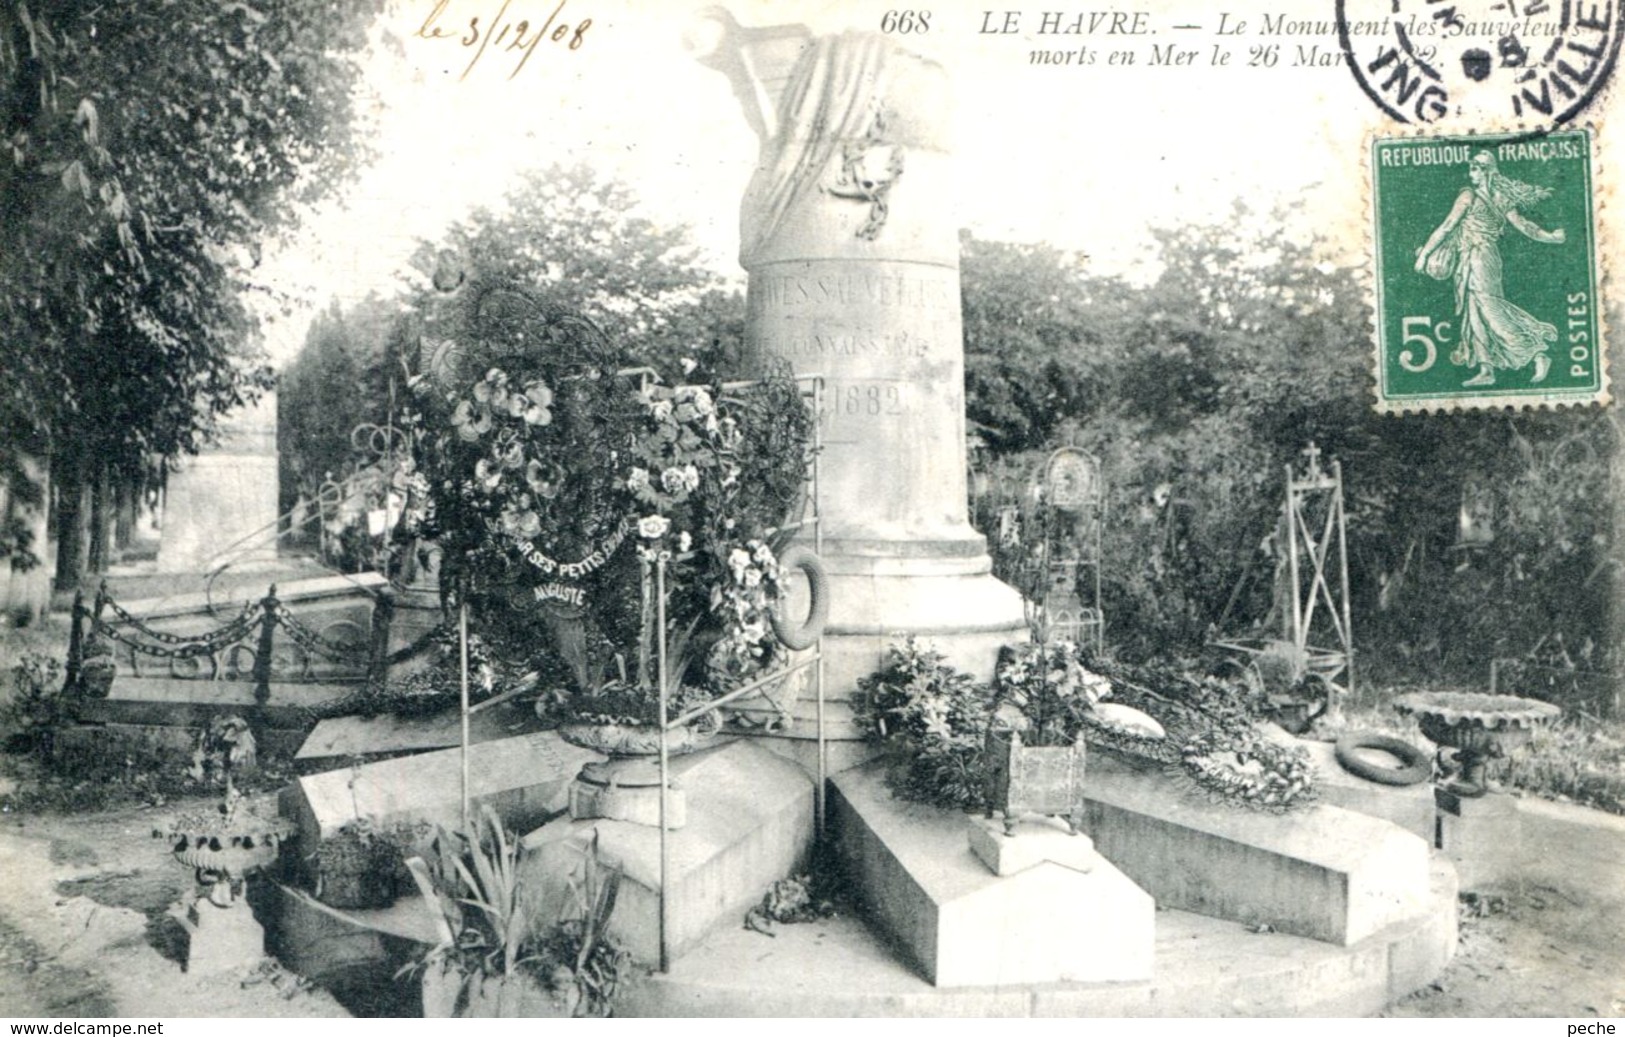 N°70274 -cpa Le Havre -le Monument Des Sauveteurs Morts En Mer- - Non Classés